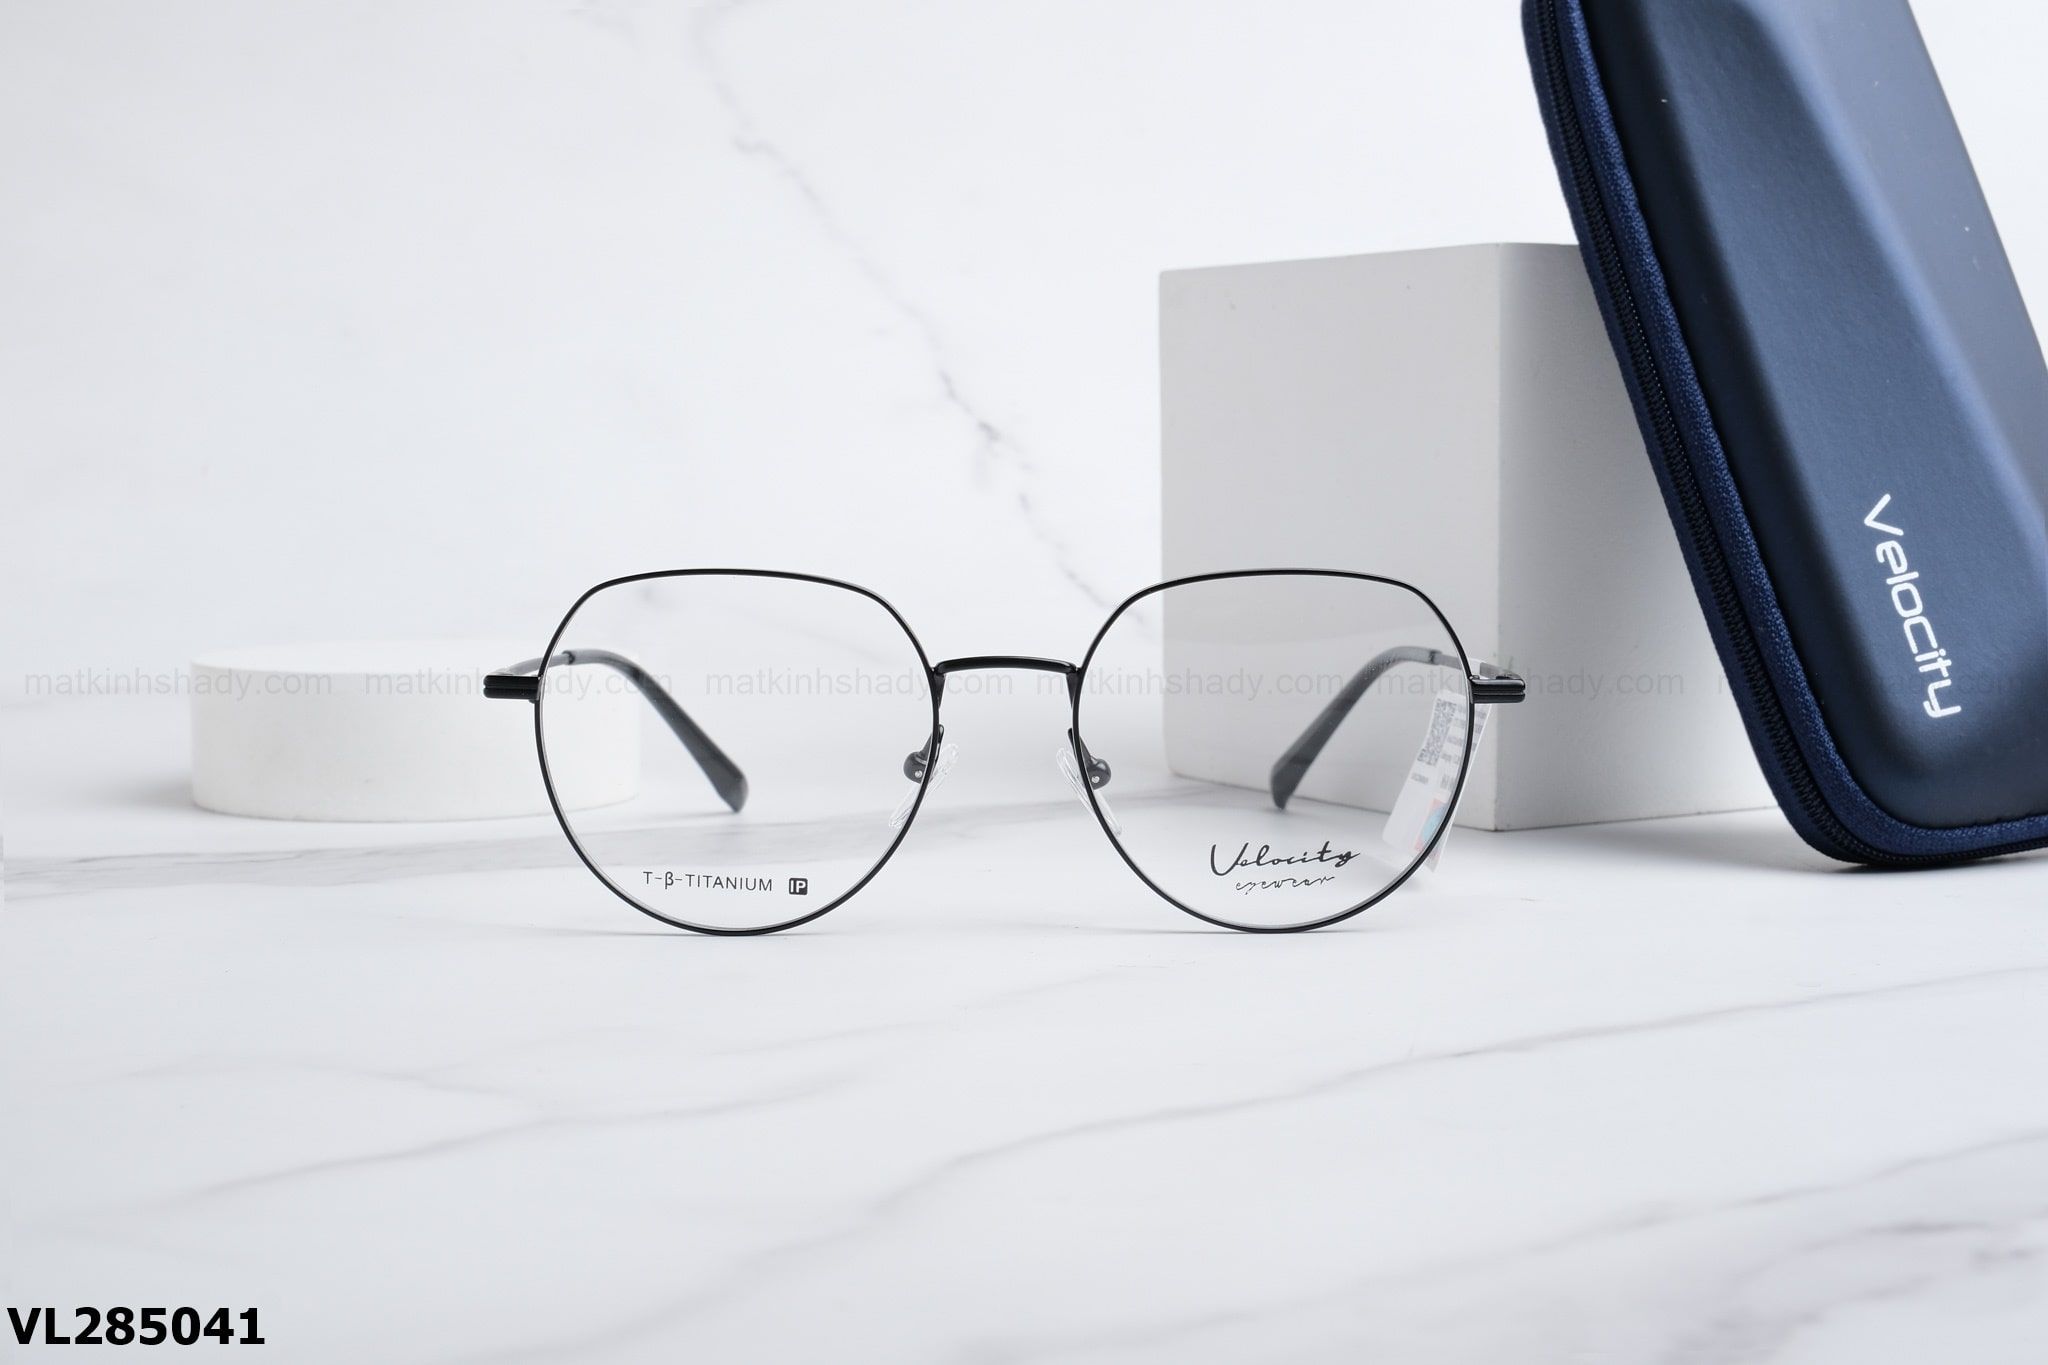  Velocity Eyewear - Glasses - VL285041 